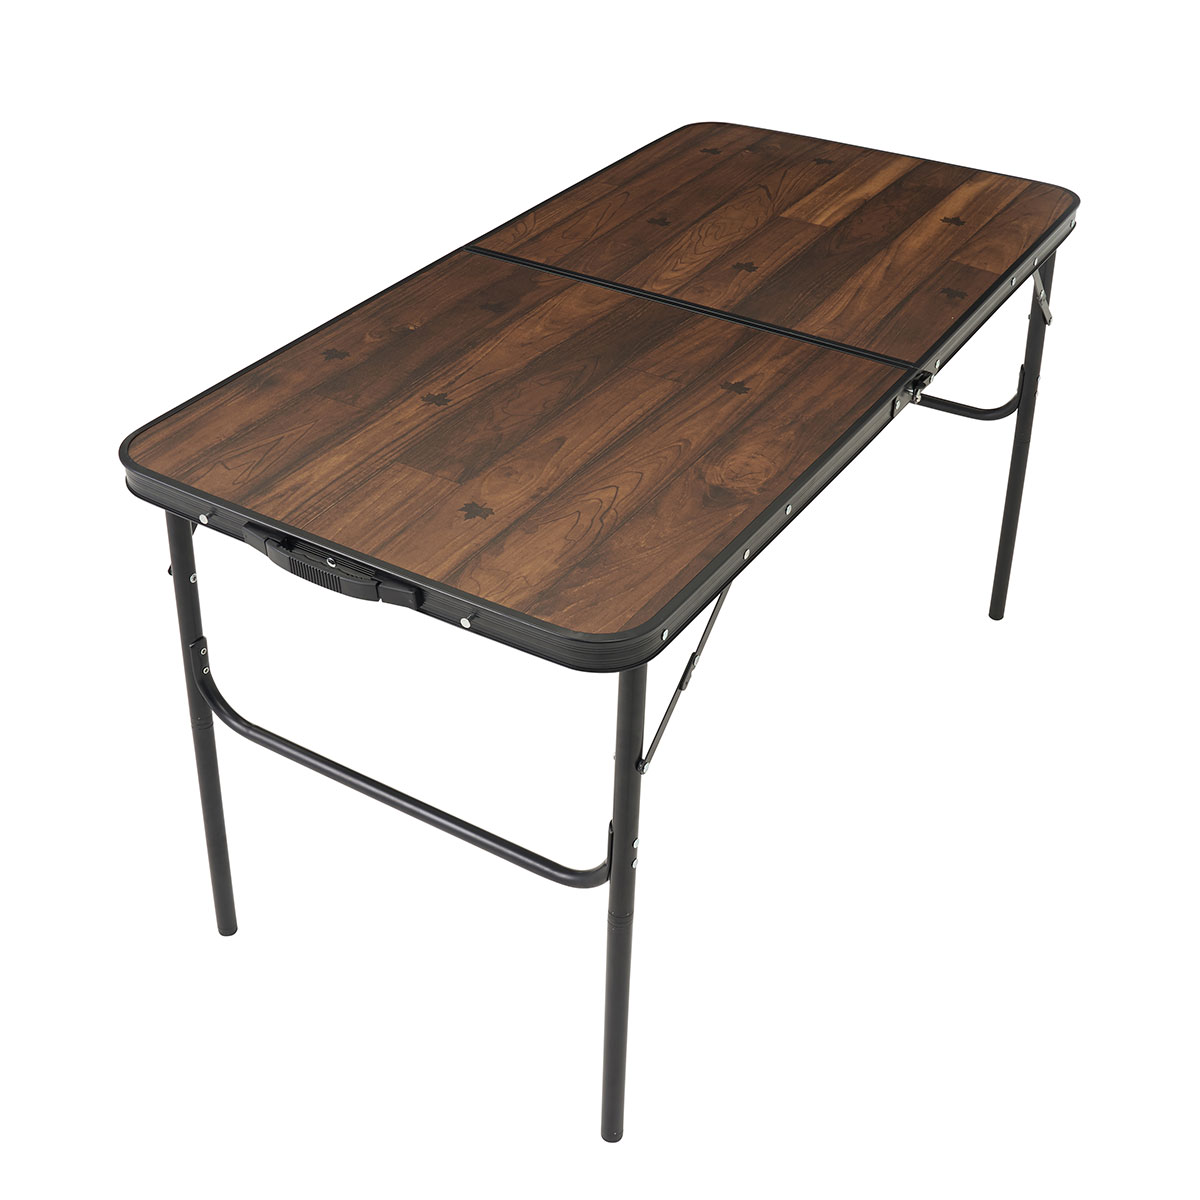 Tracksleeper テーブル 12060|ギア|家具|テーブル|製品情報|ロゴス ...